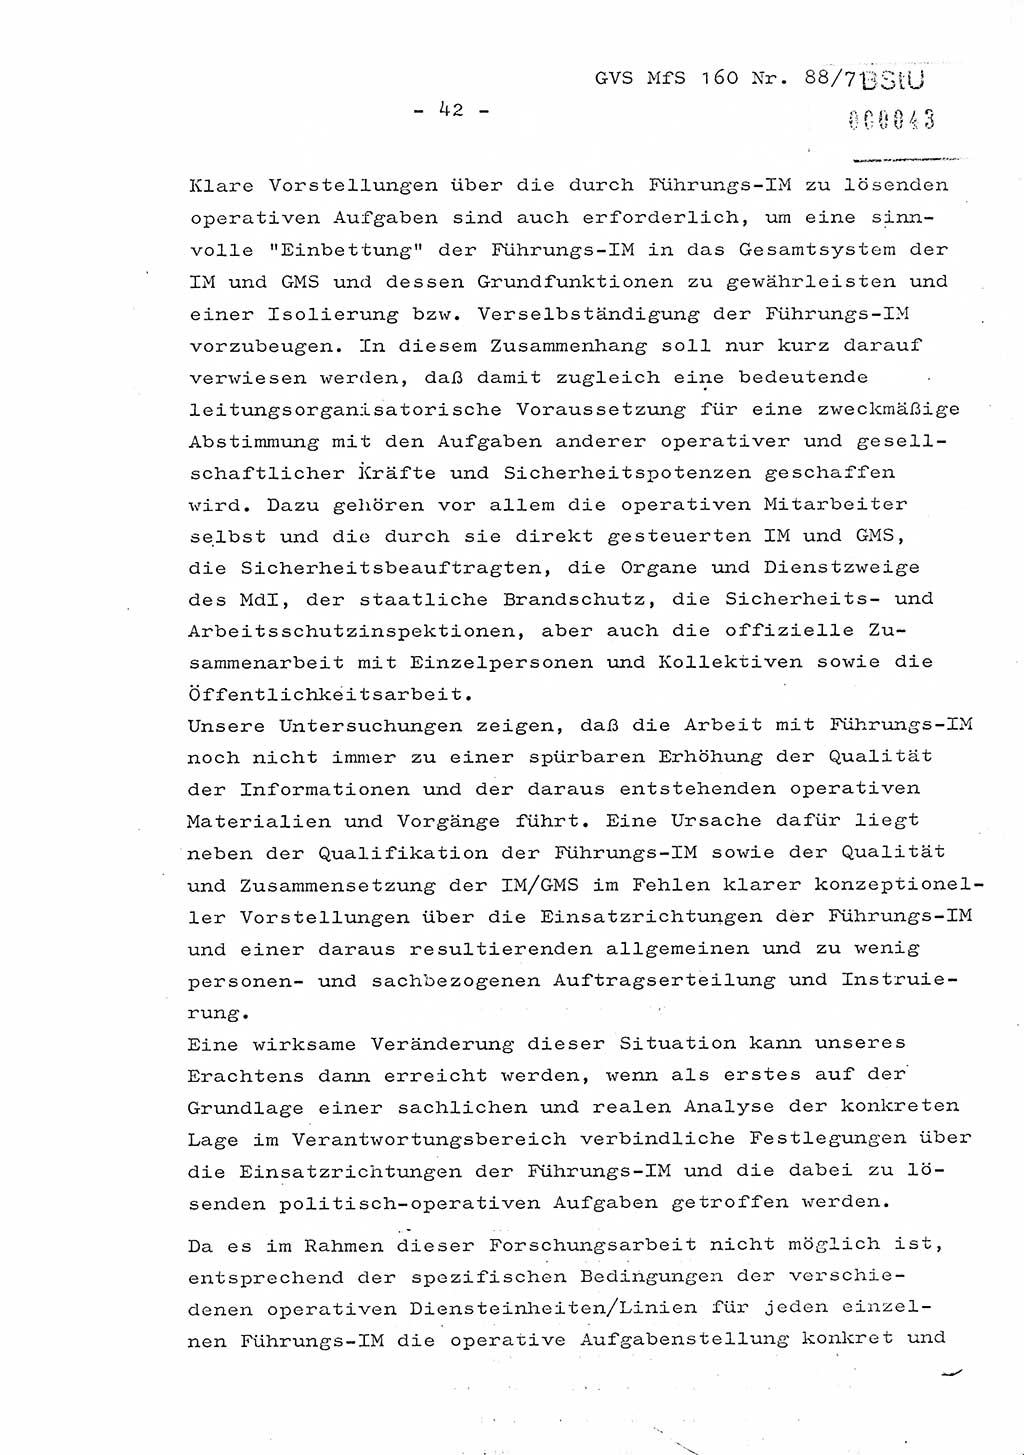 Dissertation Oberstleutnant Josef Schwarz (BV Schwerin), Major Fritz Amm (JHS), Hauptmann Peter Gräßler (JHS), Ministerium für Staatssicherheit (MfS) [Deutsche Demokratische Republik (DDR)], Juristische Hochschule (JHS), Geheime Verschlußsache (GVS) 160-88/71, Potsdam 1972, Seite 42 (Diss. MfS DDR JHS GVS 160-88/71 1972, S. 42)